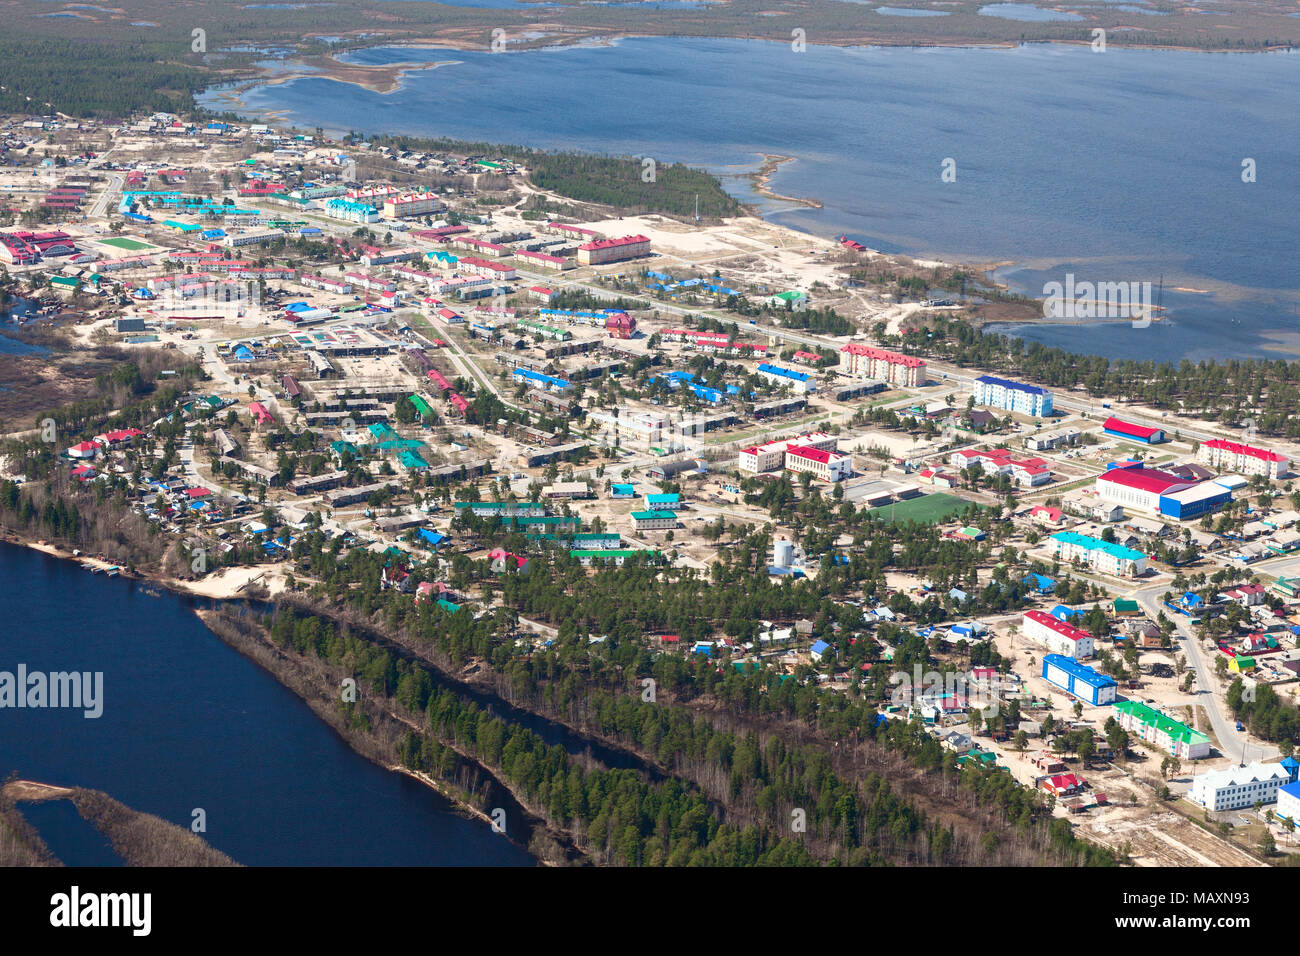 Vista aerea della città Novoagansk, regione di Tyumen, Russia, che si trova sulla riva del fiume siberiano Agan in primavera. Foto Stock